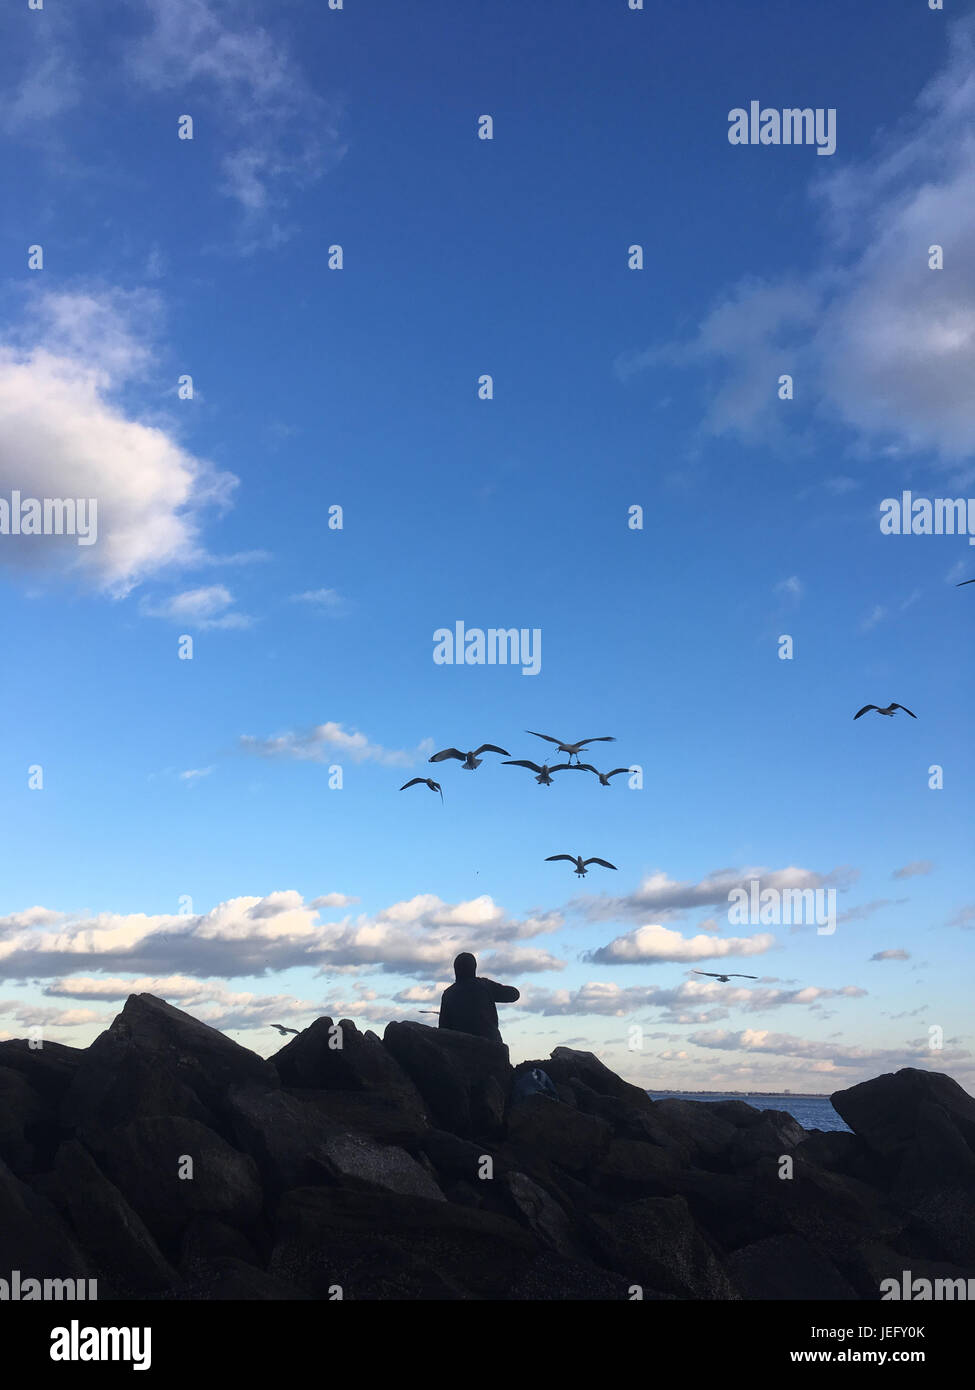 Mans siede su rocce e alimenta le acciughe di gabbiani accanto all'oceano al crepuscolo. Coney Island, Brooklyn, New York. Gabbiani alimentati dall'uomo sulla spiaggia. Foto Stock